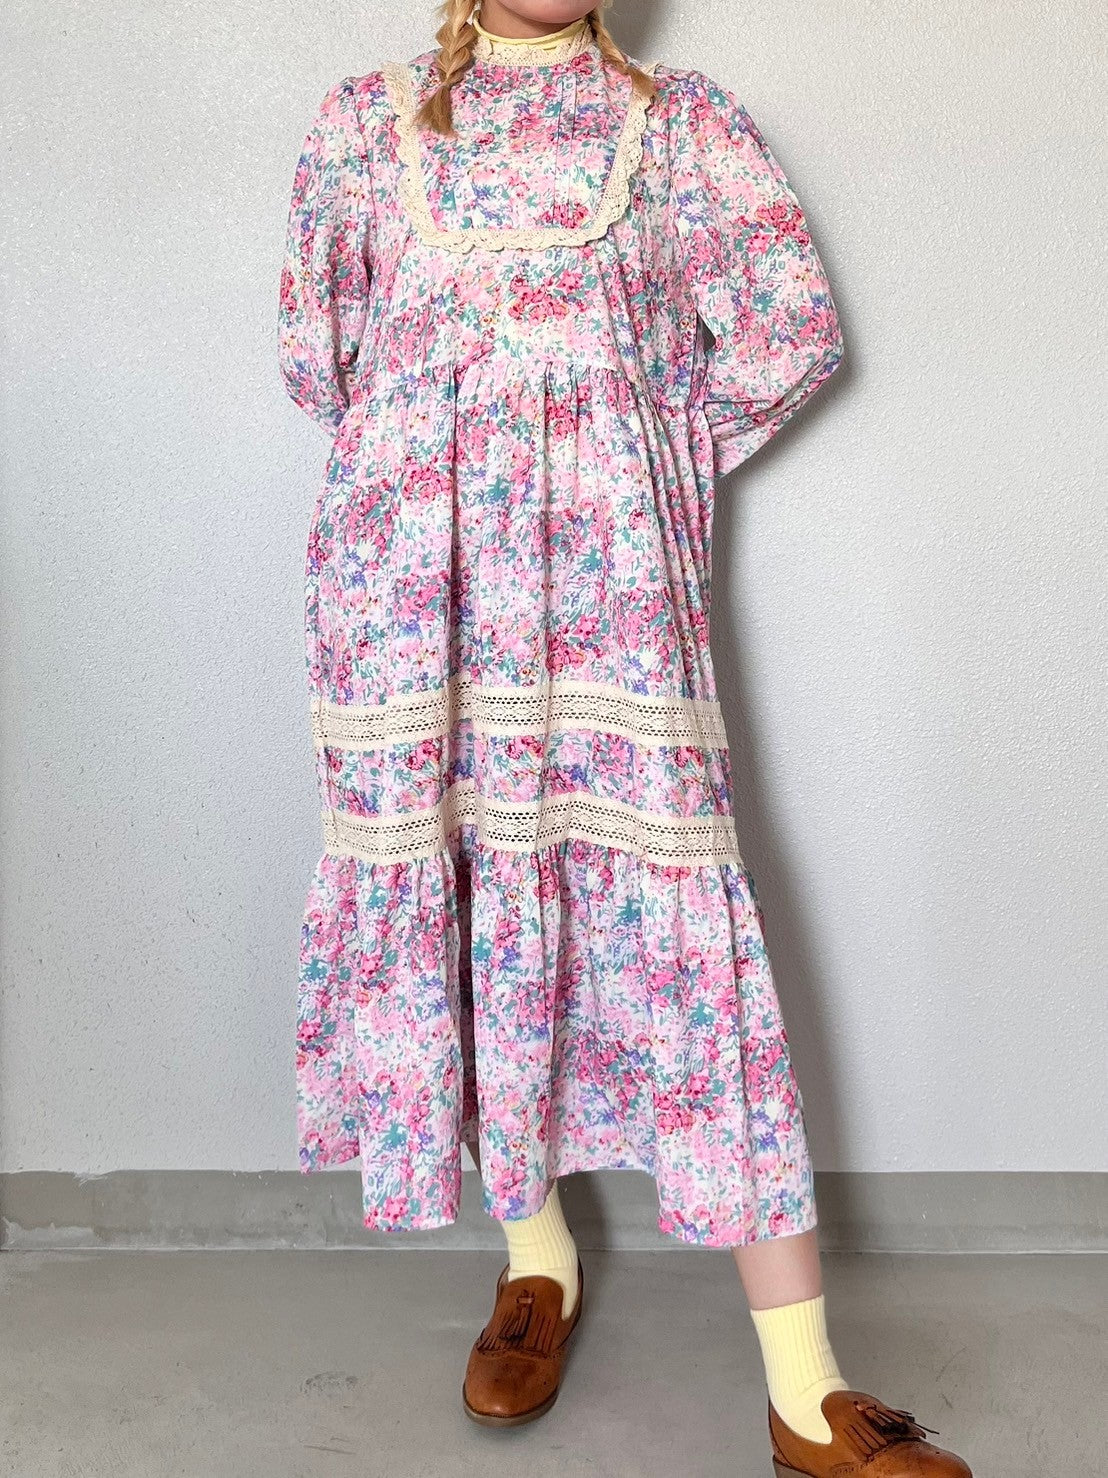 RIRI's select-レトロガーリー花柄ワンピース| own it(オウンイット)公式| 多系統女子| 多系統ファッション